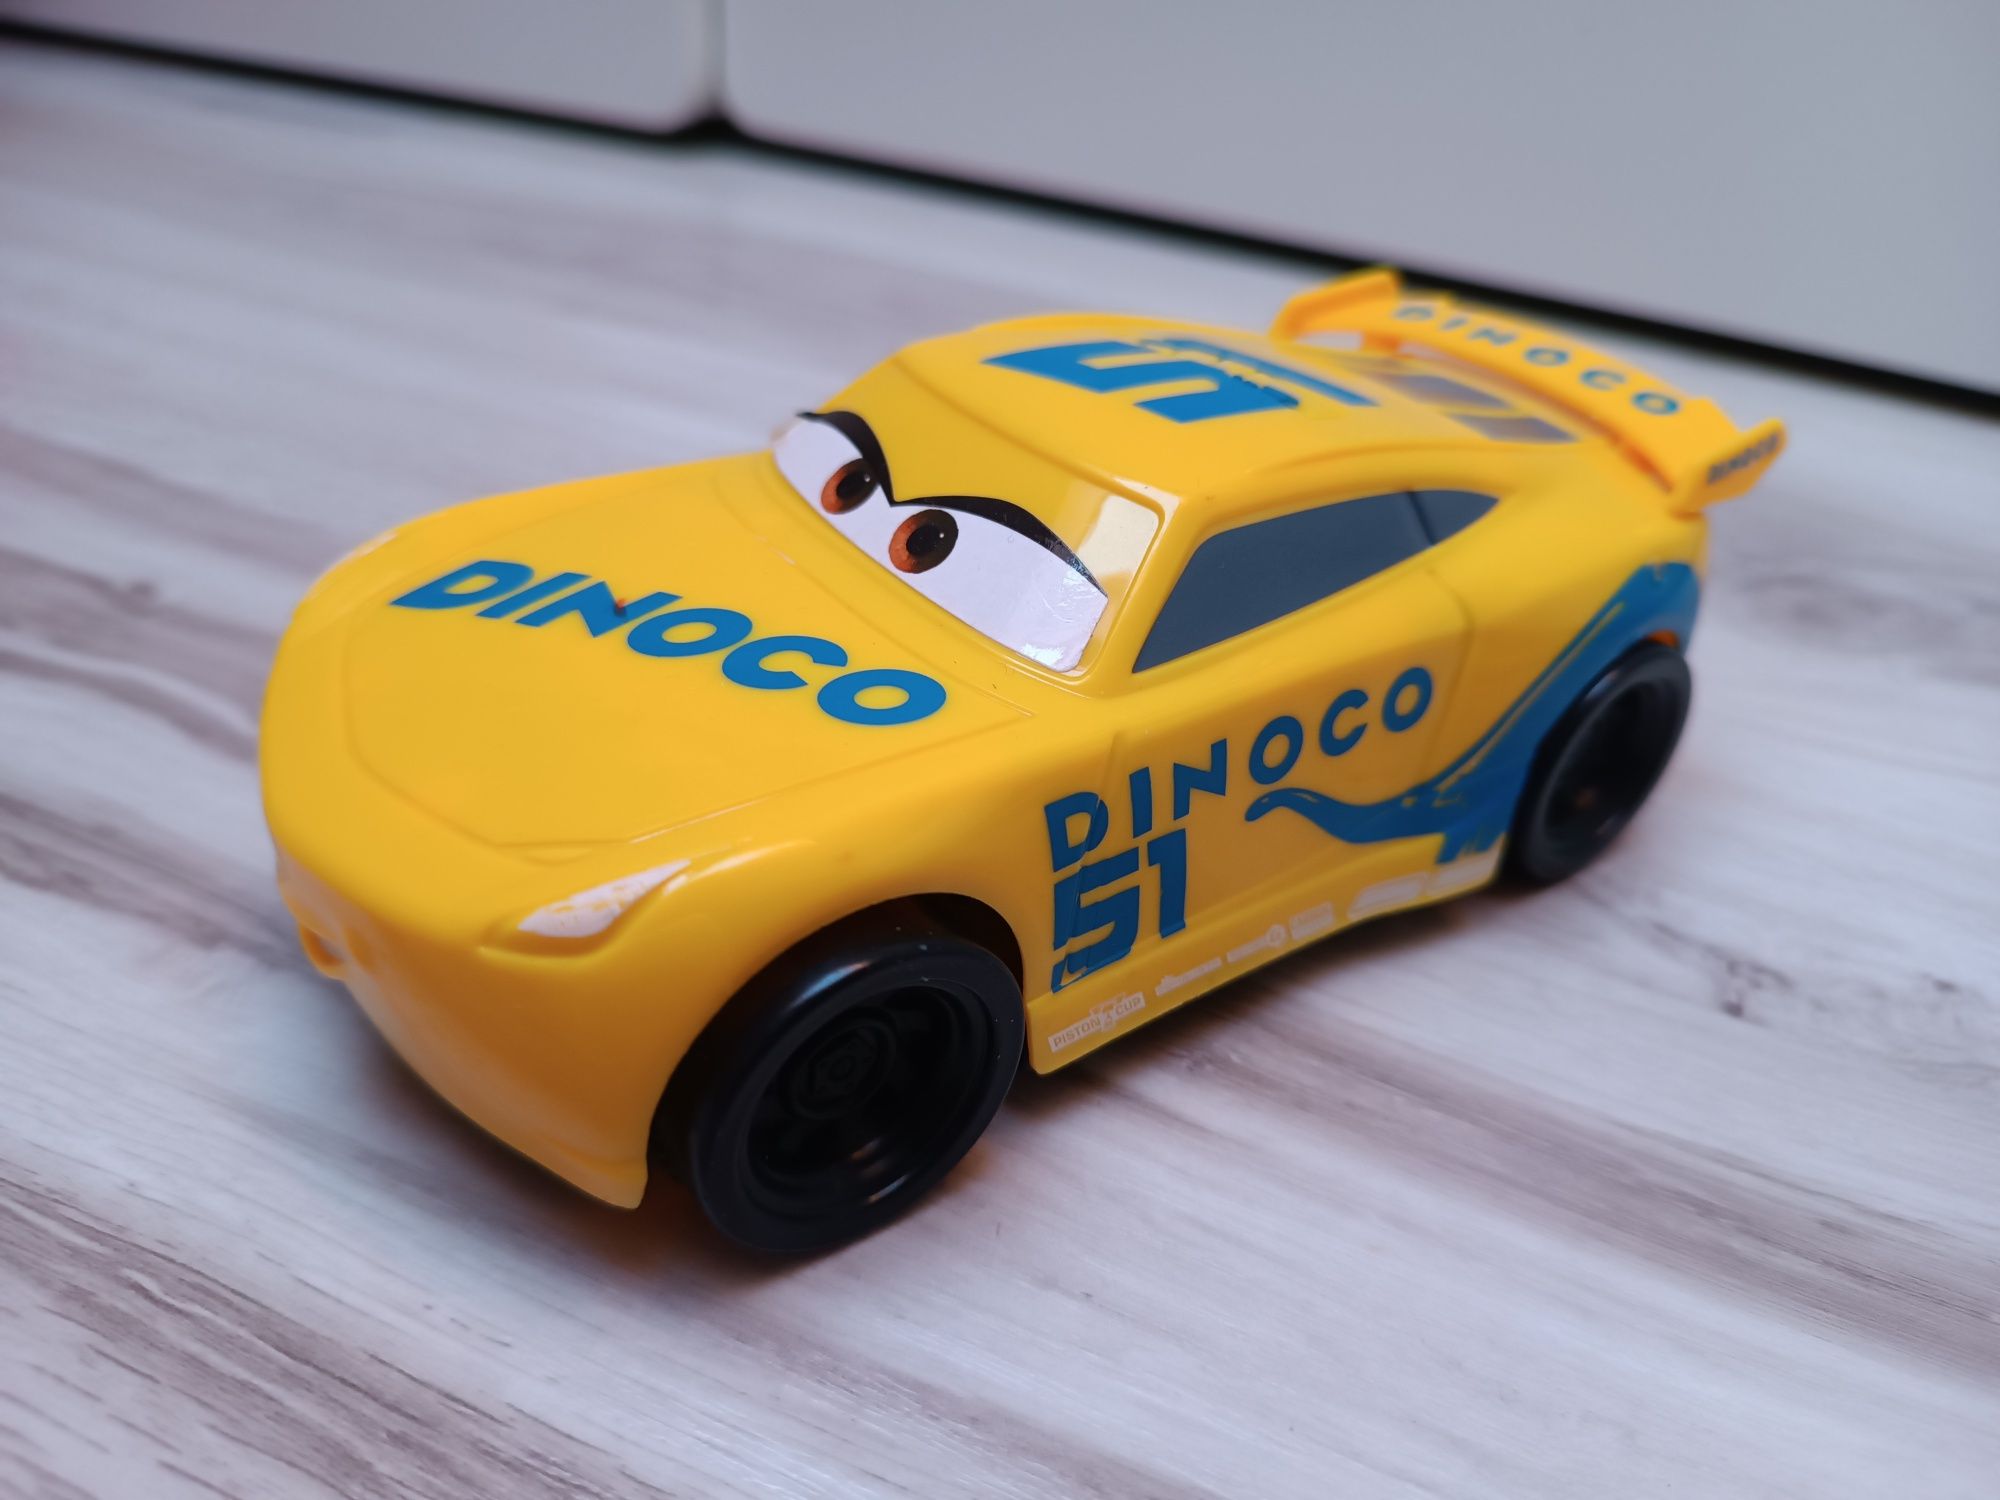 Samochodzik Dinoco